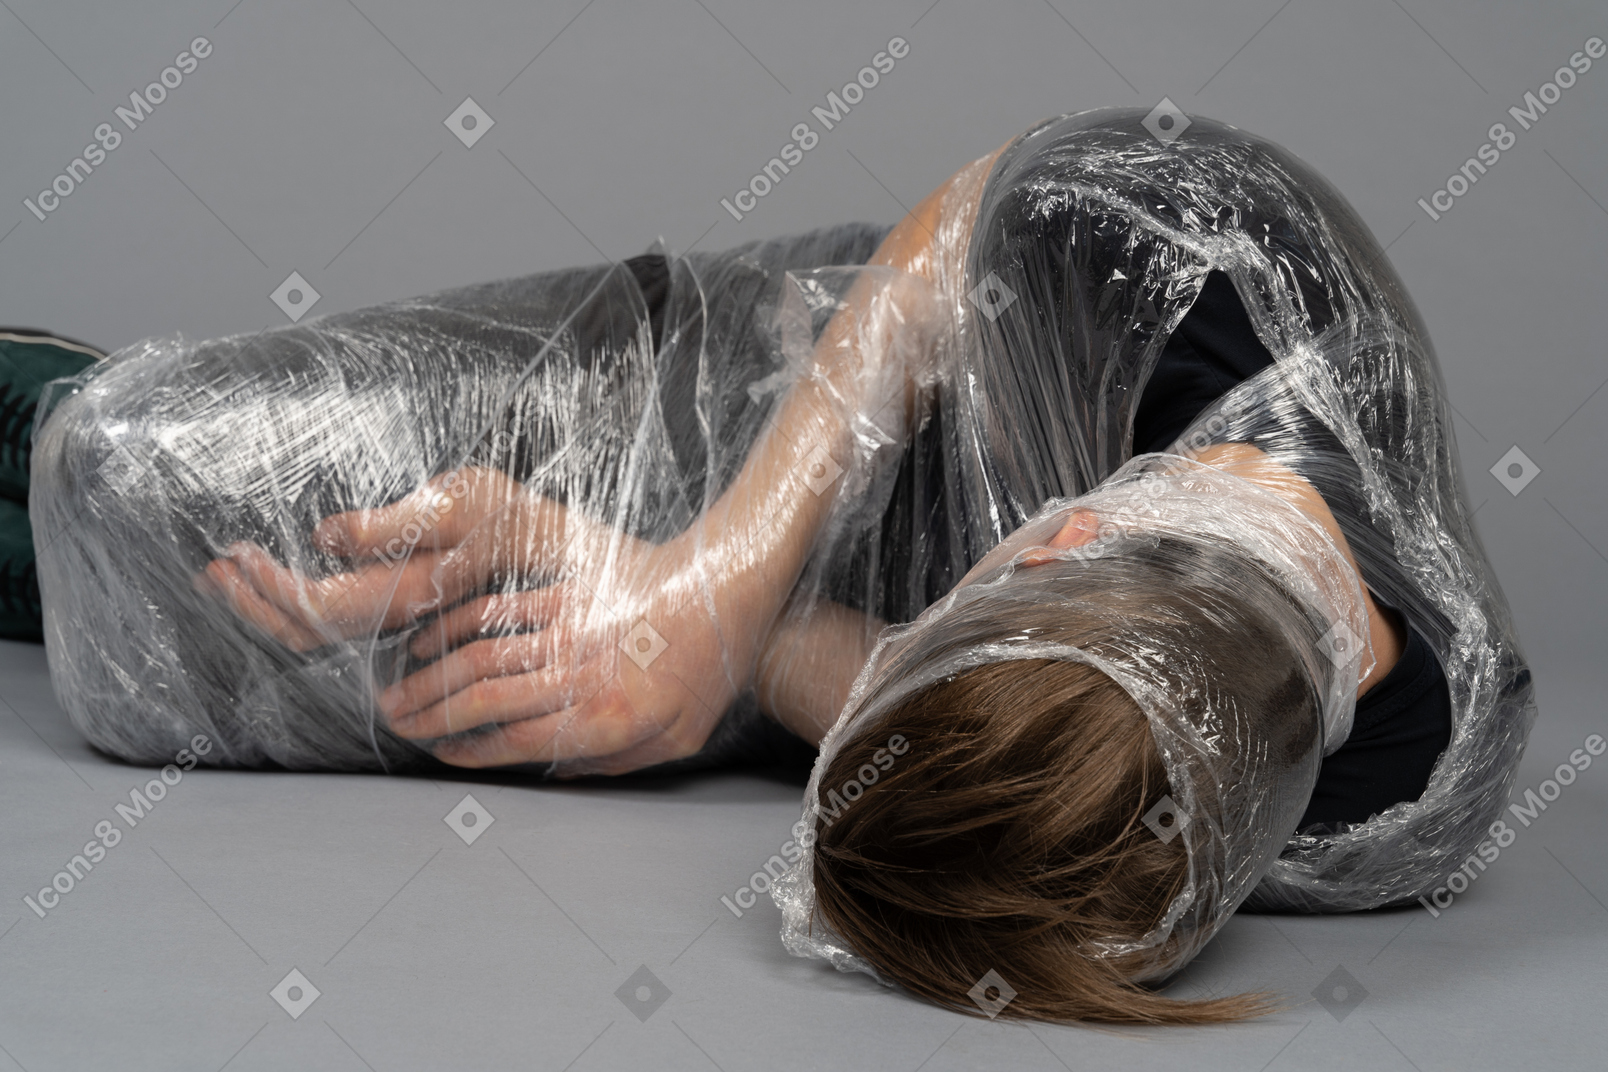 Jeune homme couché enveloppé dans du plastique